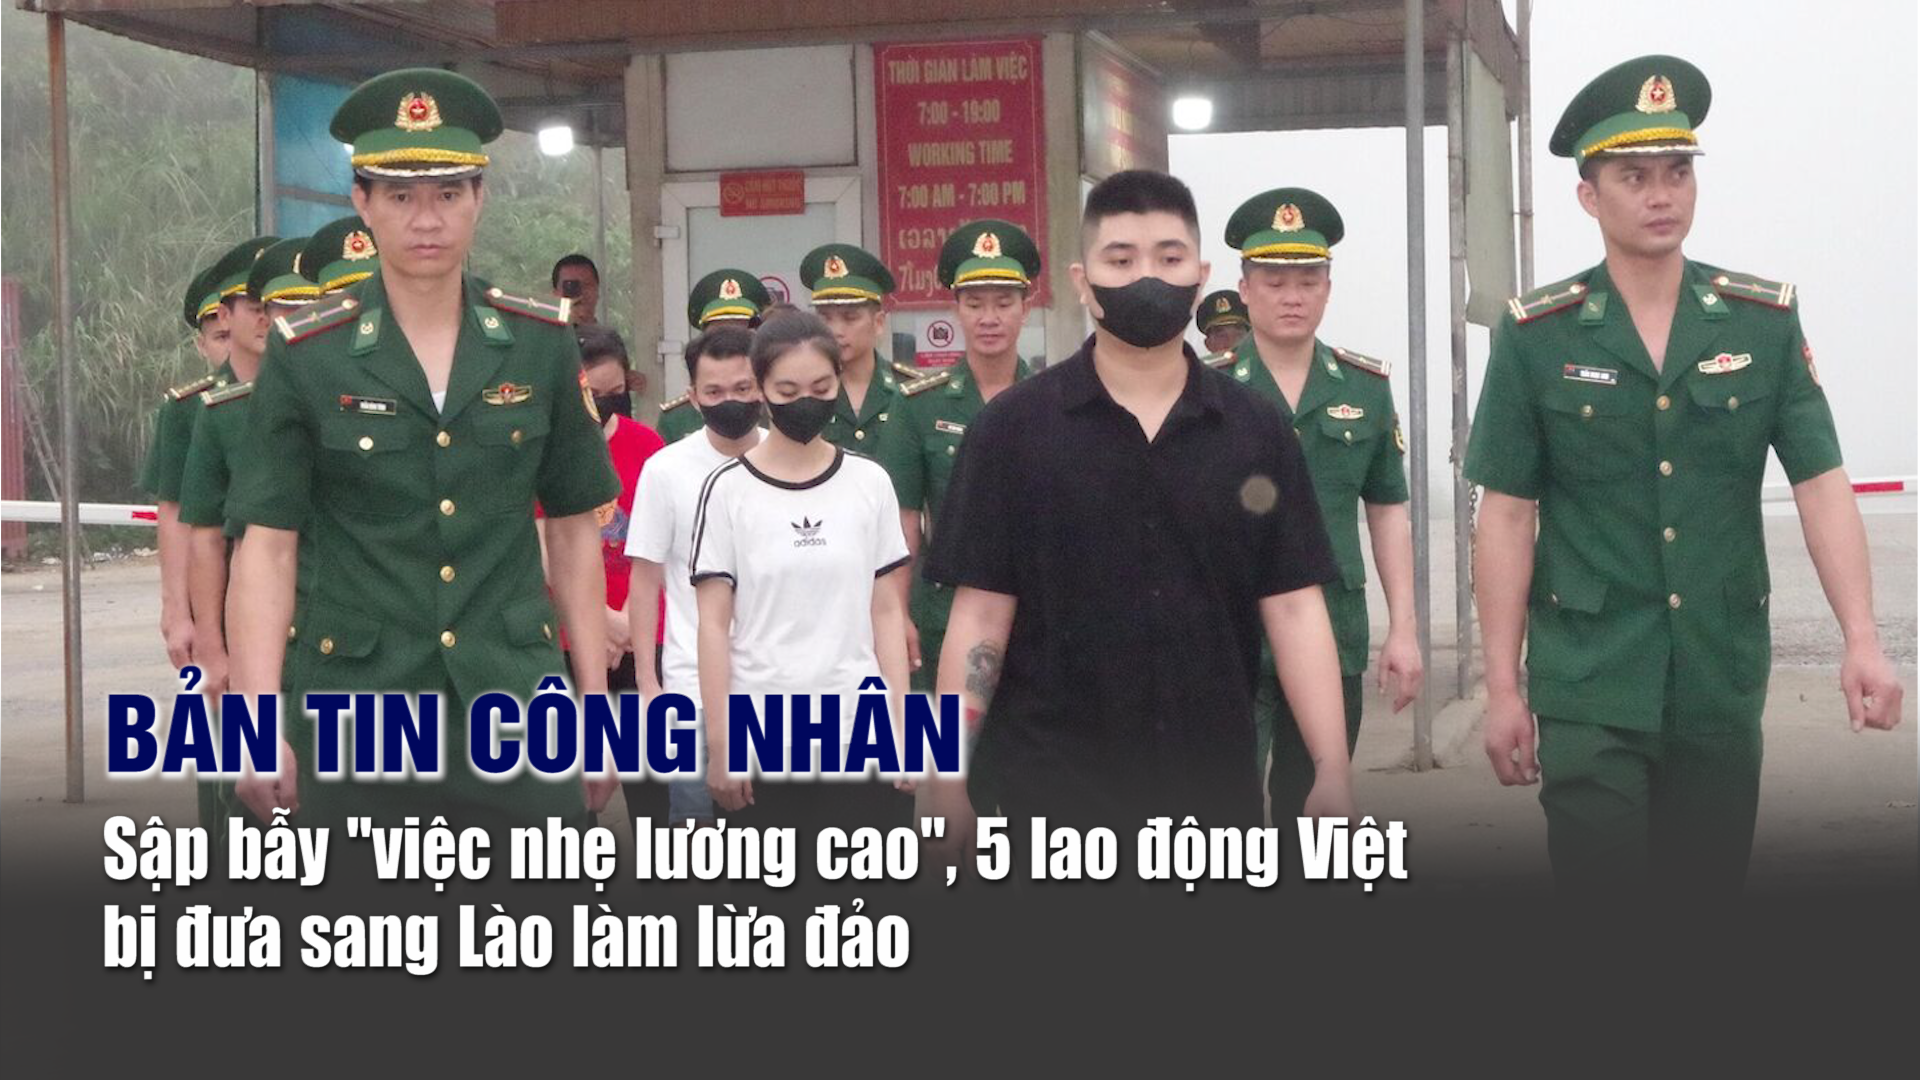 Bản tin công nhân: Sập bẫy "việc nhẹ lương cao", 5 lao động Việt bị đưa sang Lào làm lừa đảo